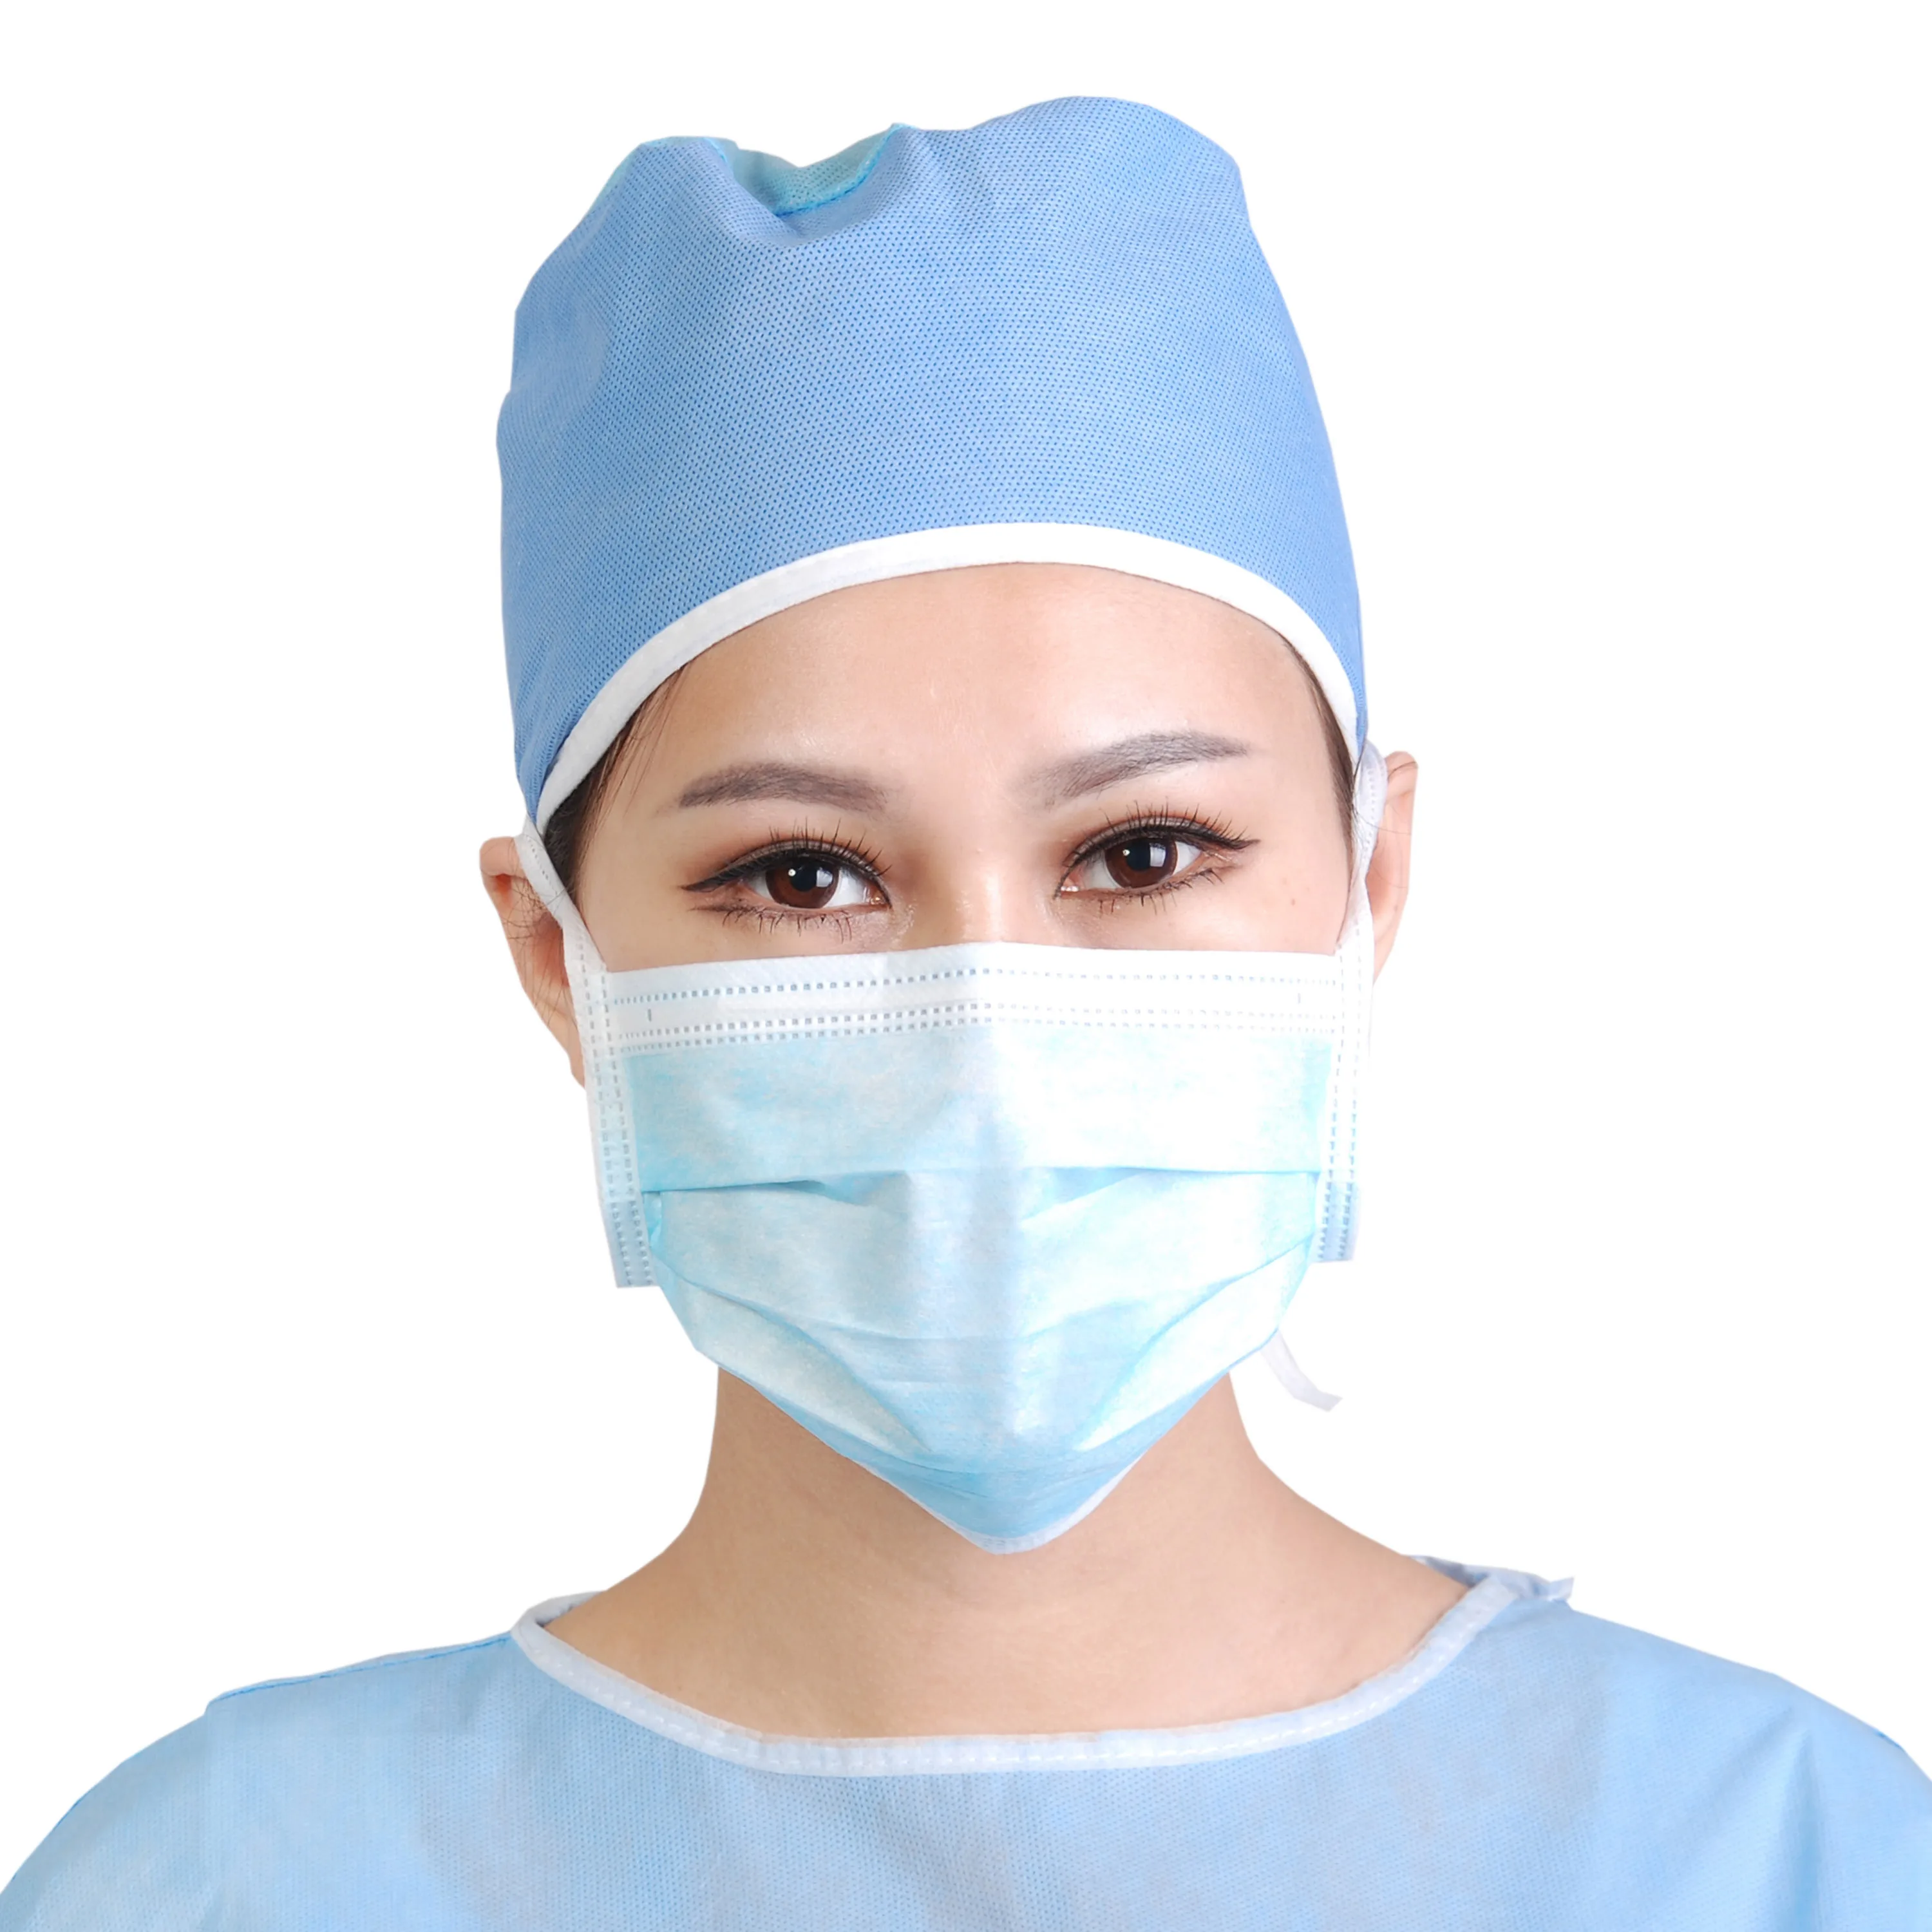 Защита медицинских масок. Маска медицинская. Медицинская маска для лица. Медицинская каска. Хирургическая маска.